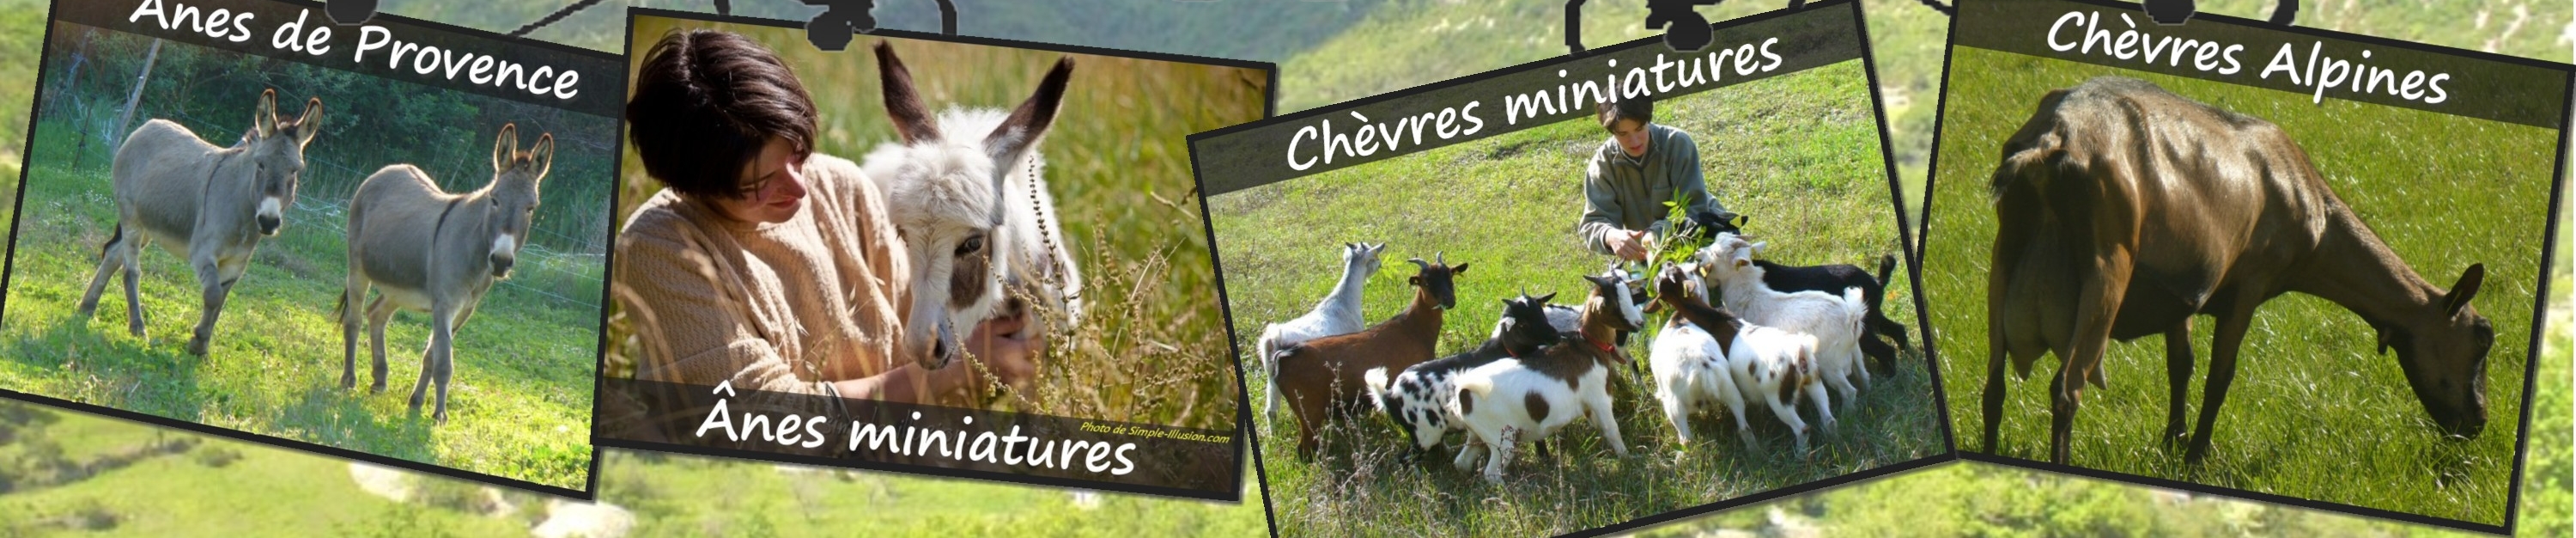 www.ferme-des-tourelles.net - Suite pastoralisme minichèvres 2016